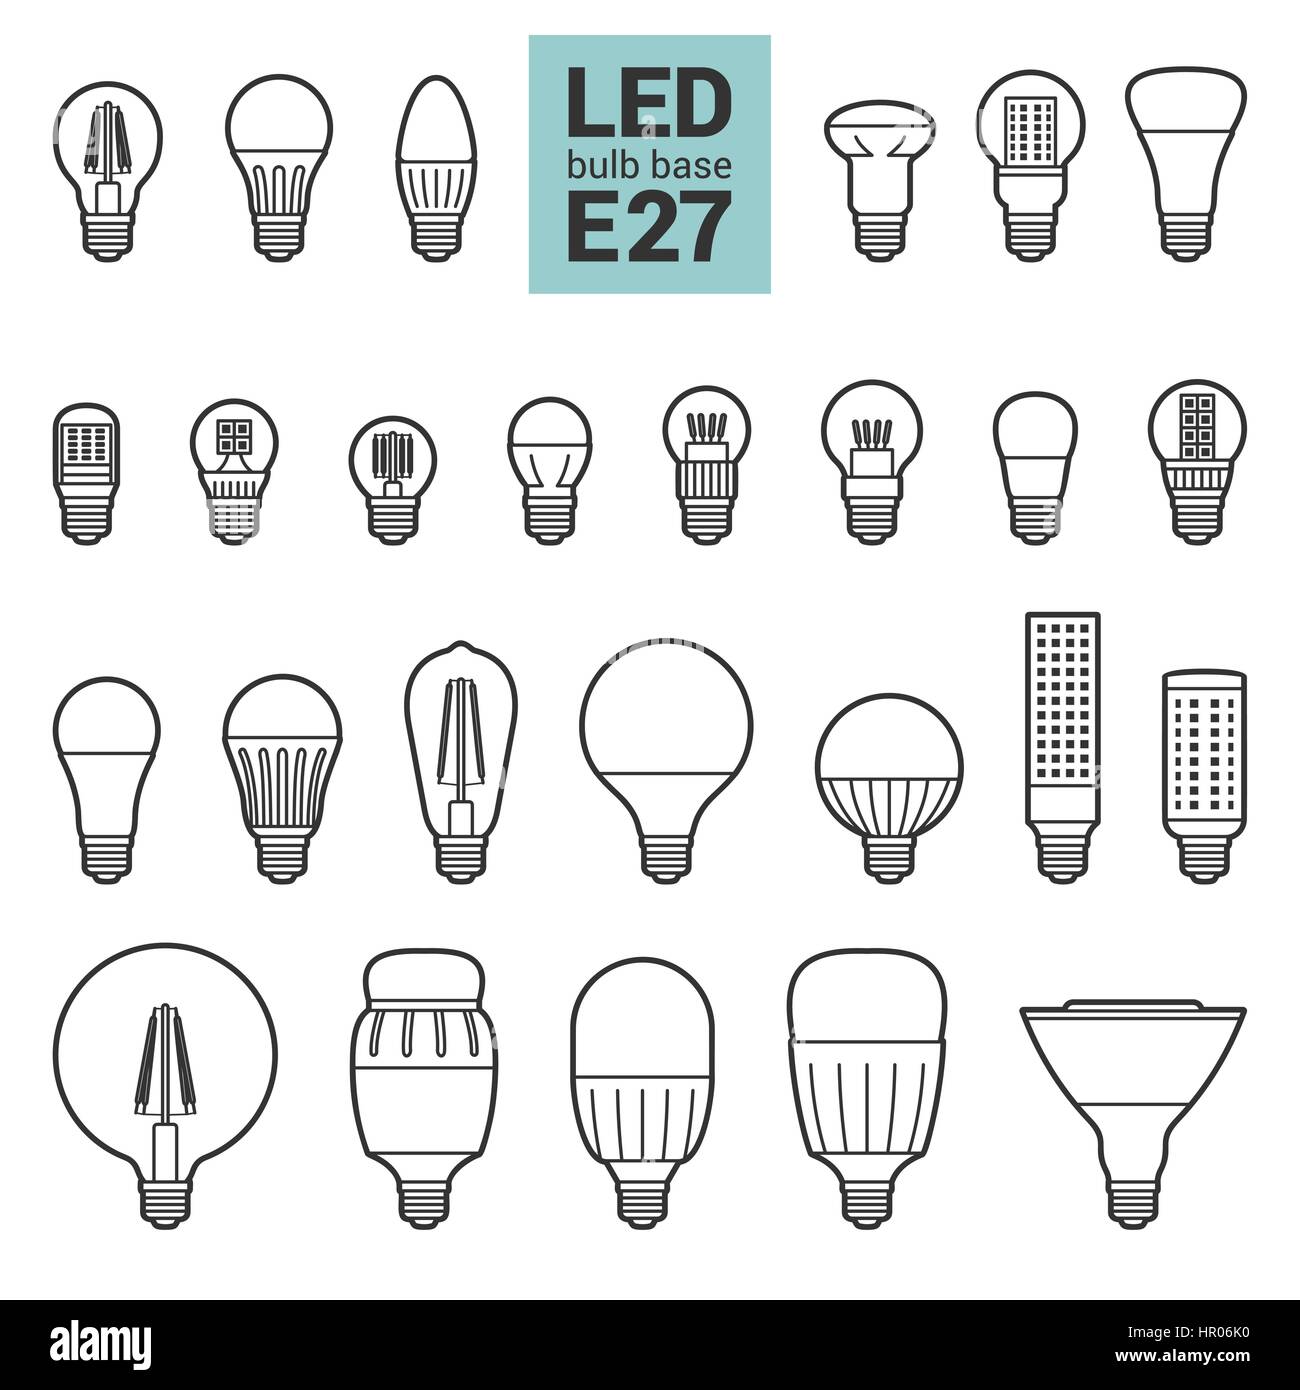 LED-Lampen mit E27-Sockel, Vektor-Übersicht-Symbol auf weißem Hintergrund  festlegen Stock-Vektorgrafik - Alamy